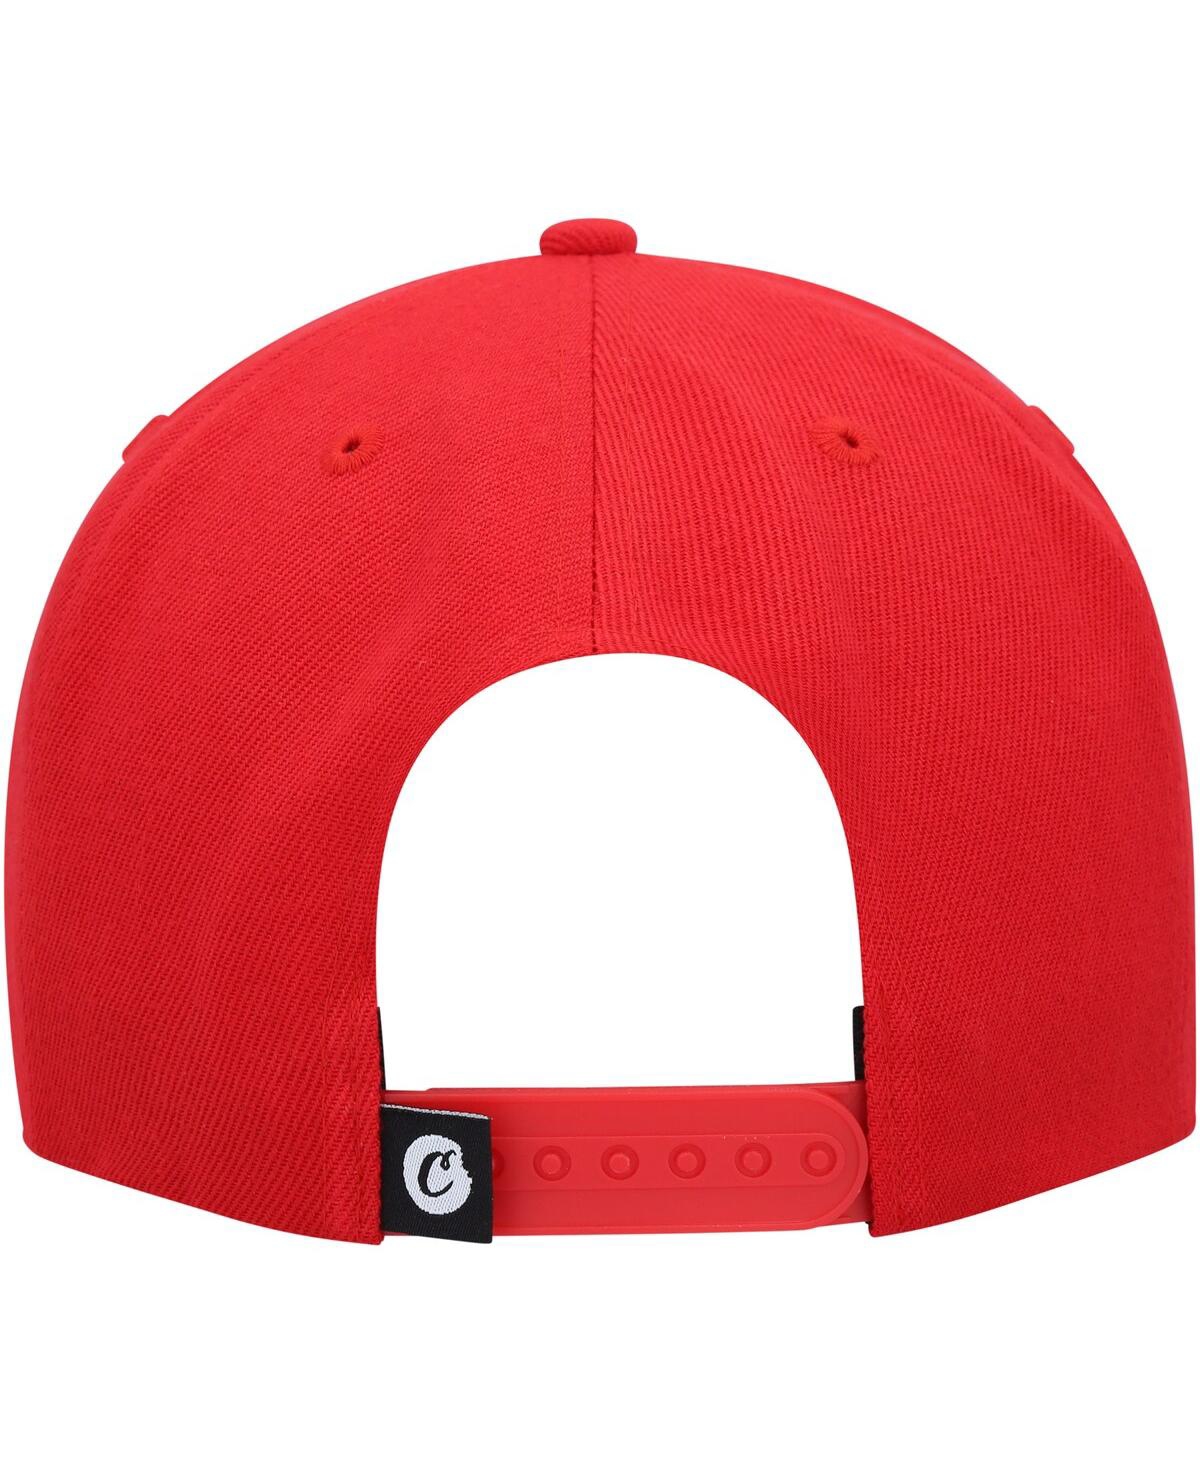 Shop Cookies Men's  Red C-bite Snapback Hat